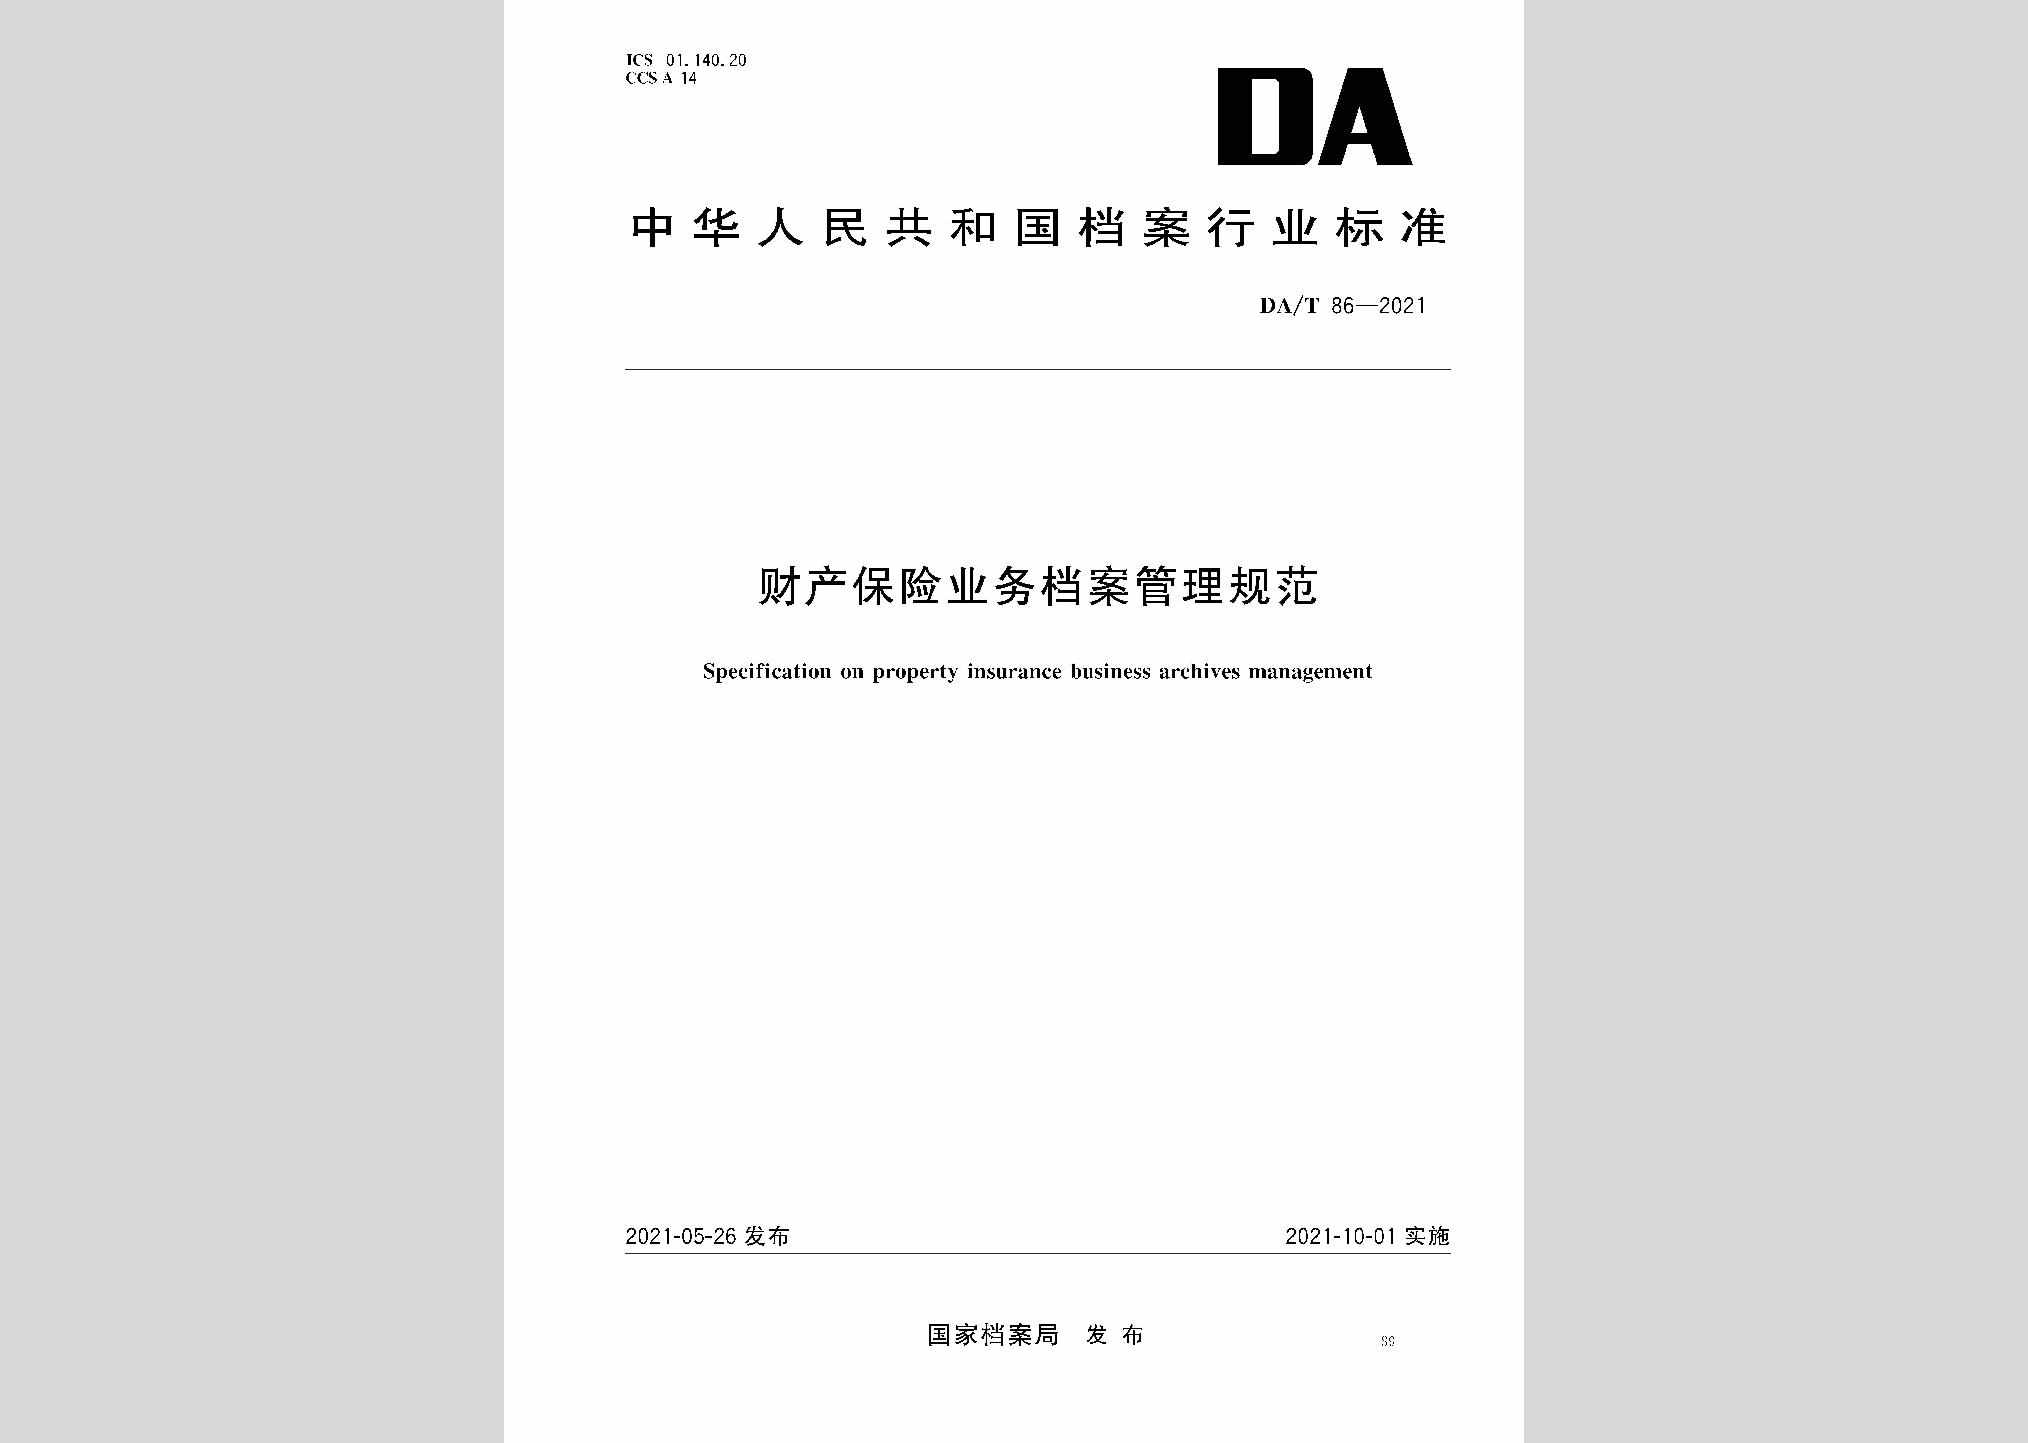 DA/T86-2021：财产保险业务档案管理规范